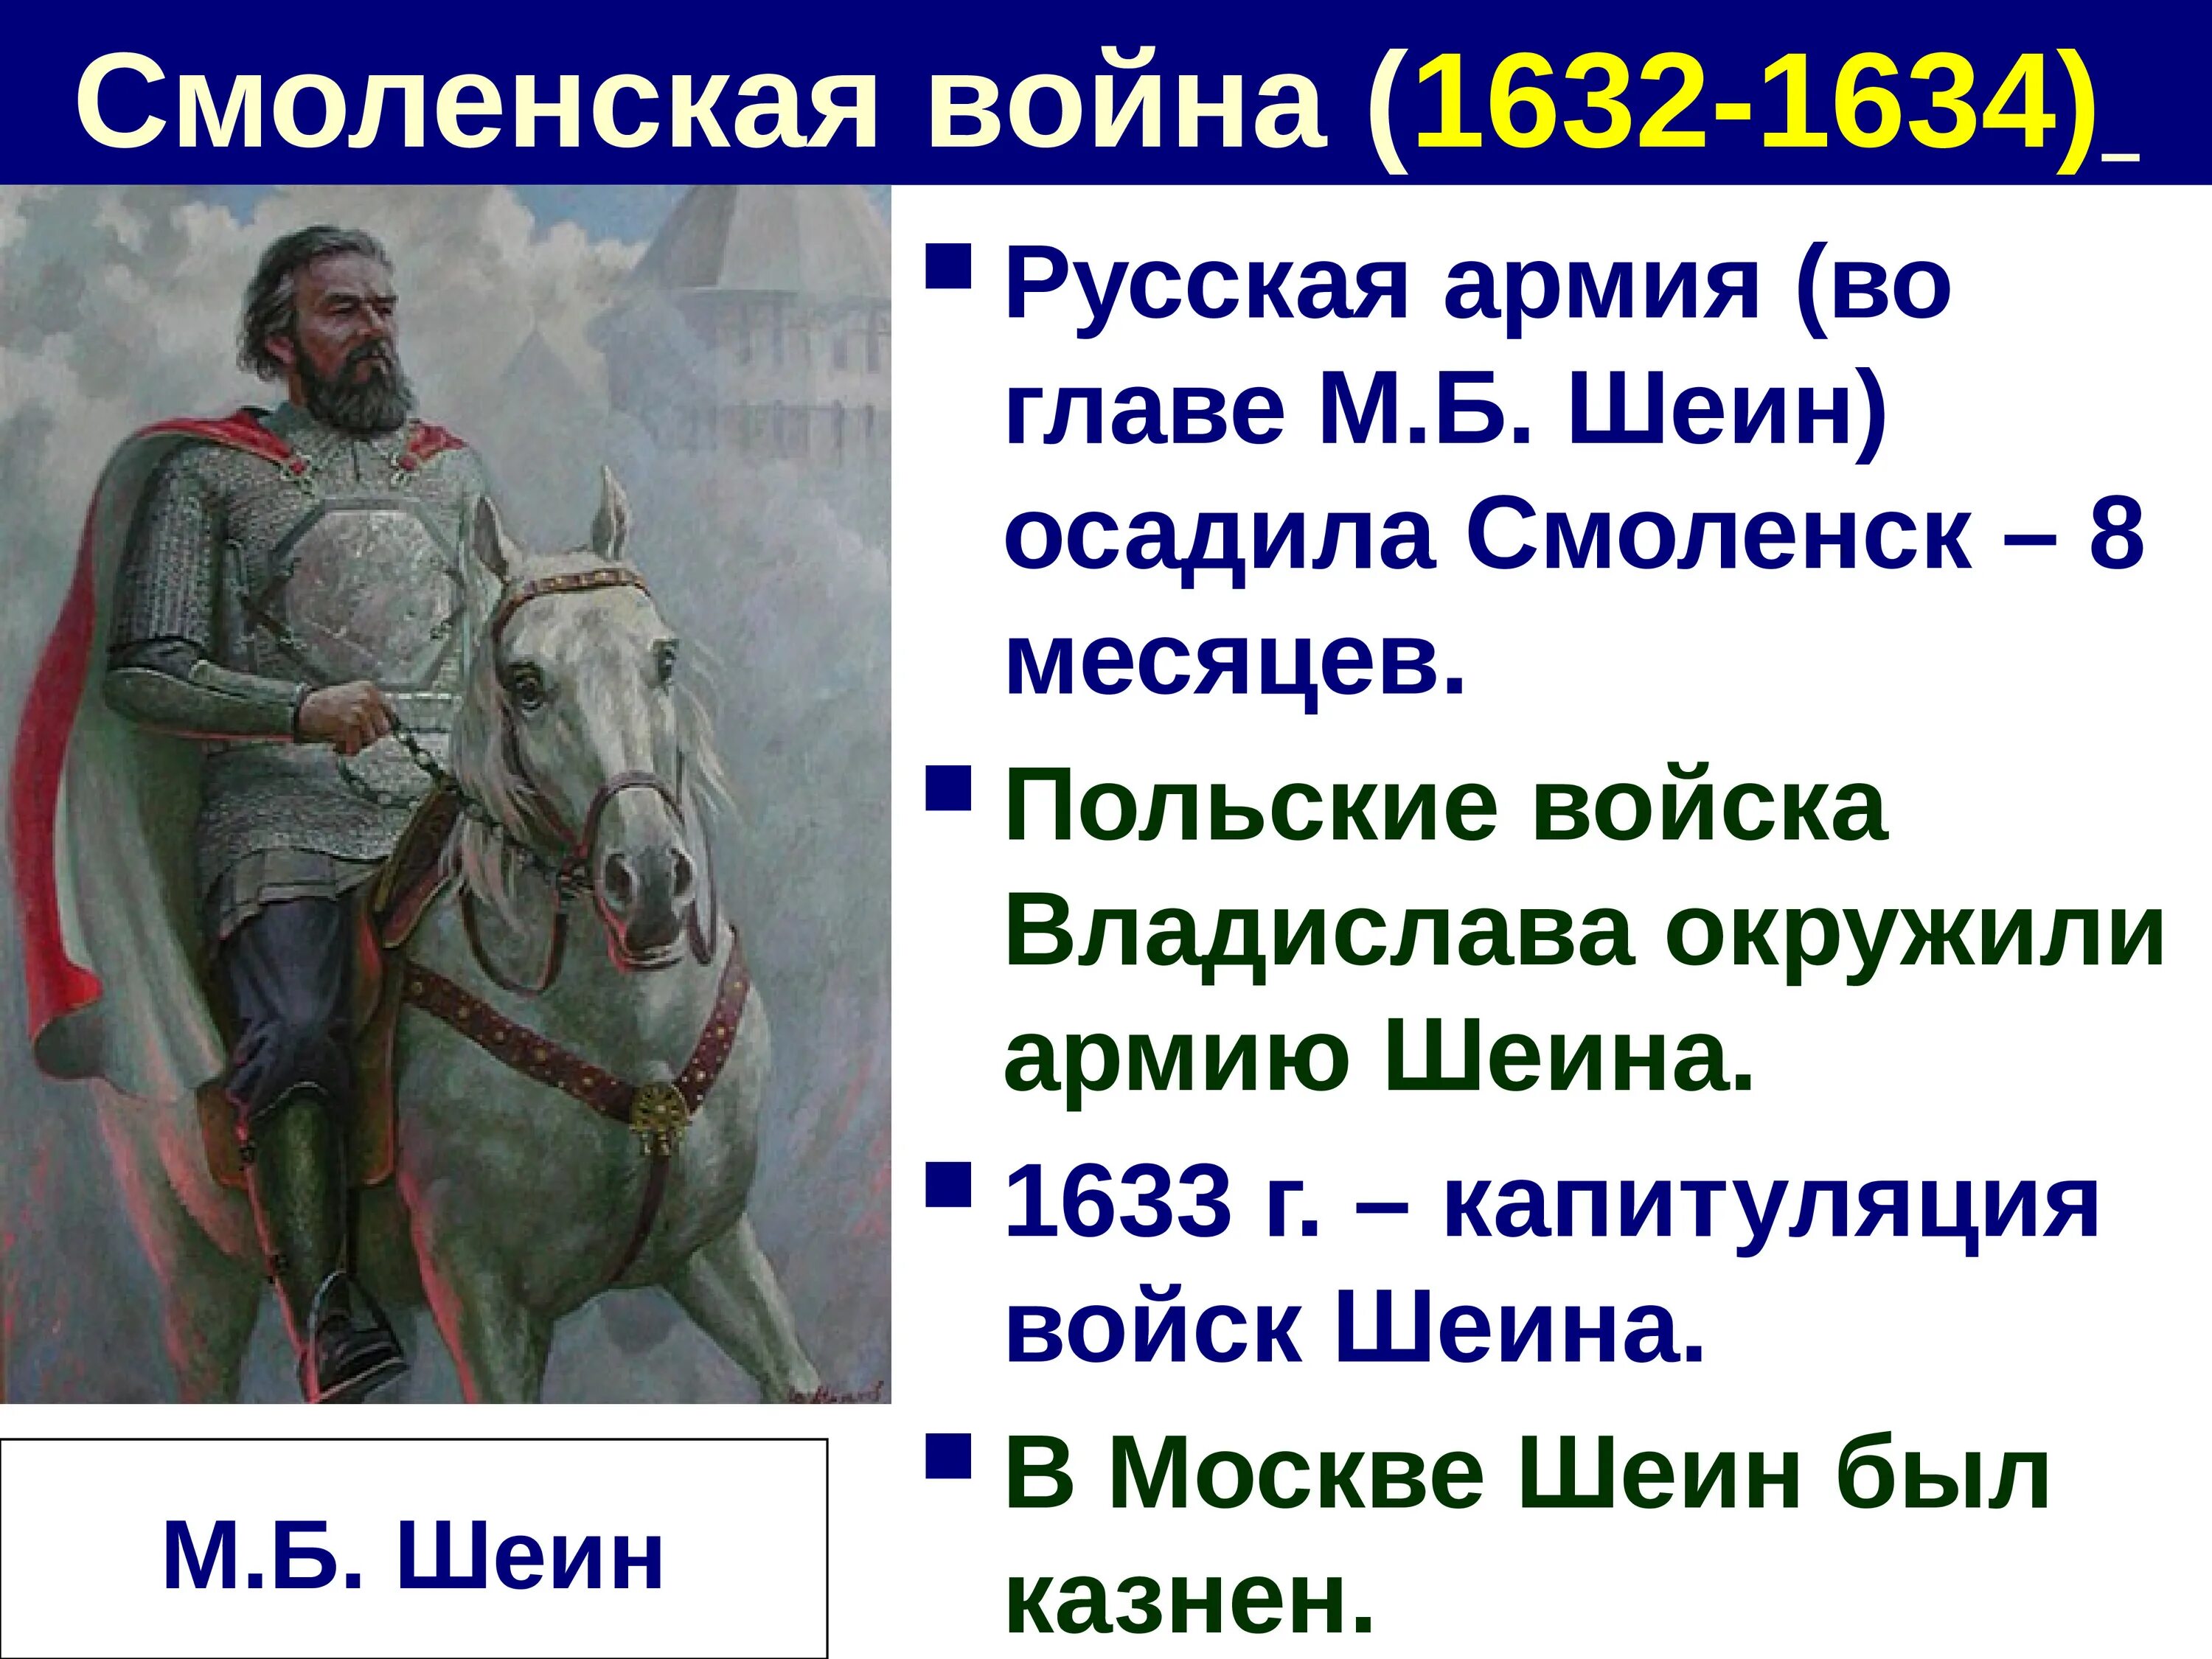 1632 г россия. Смоленской войны 1632-1634 Шеин.